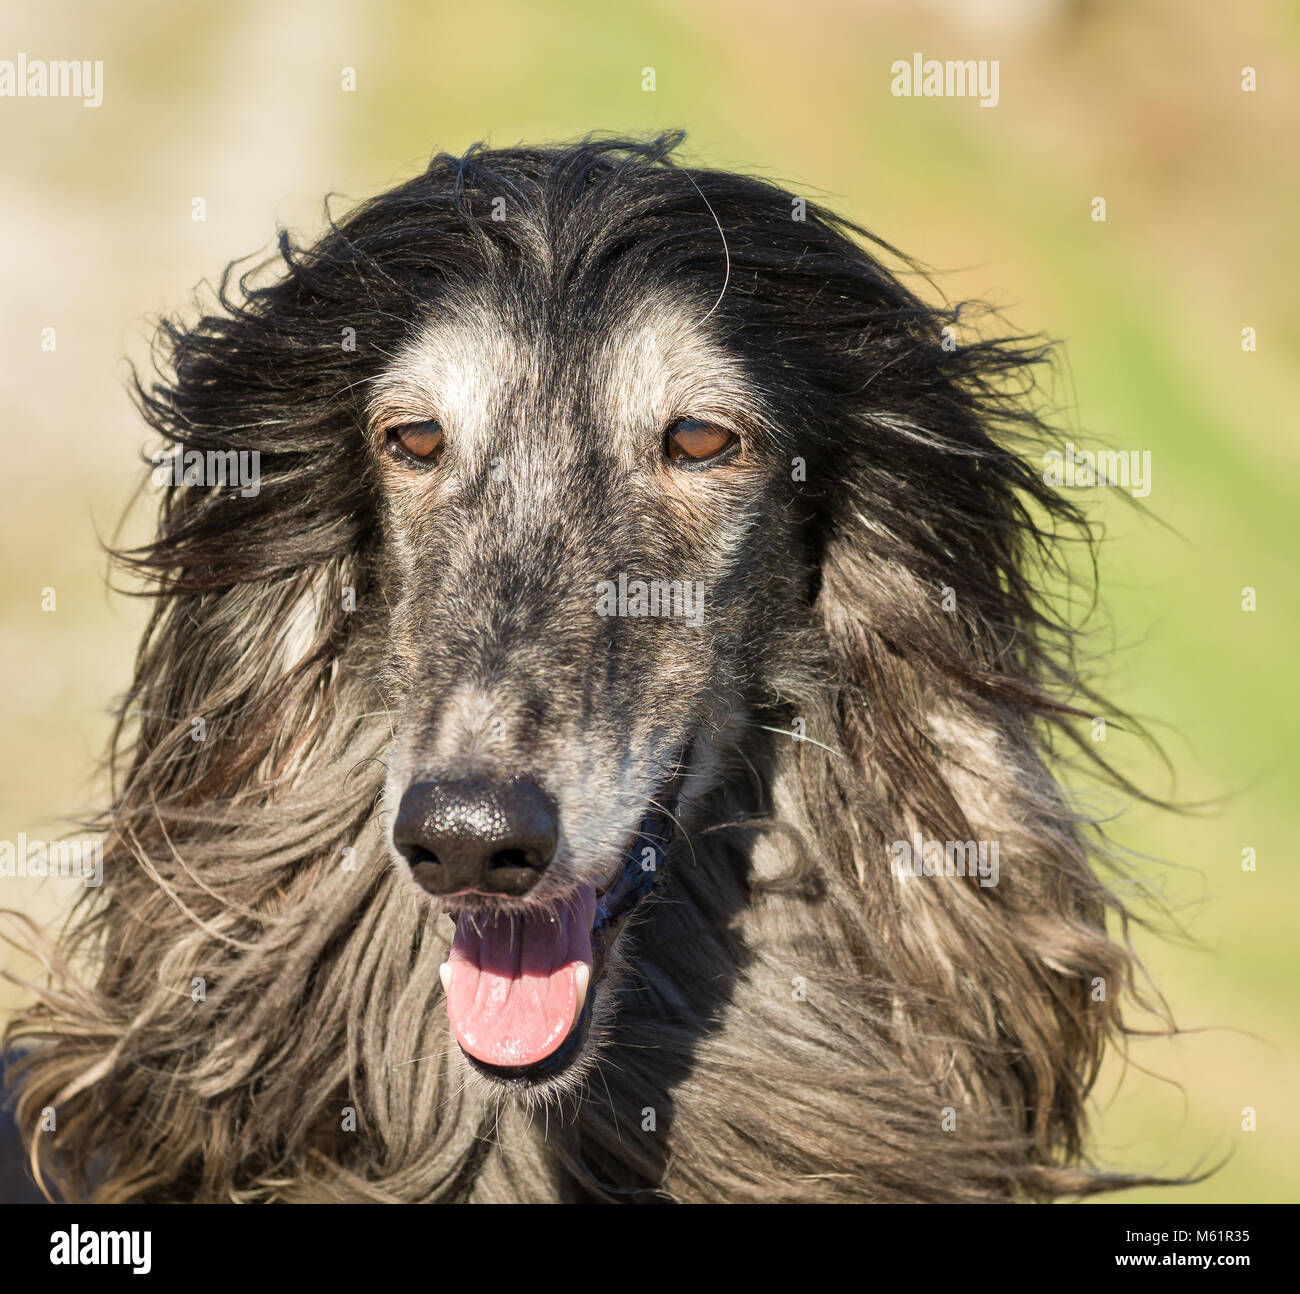 Porträt eines Afghanischen Windhundes. Den Afghanischen Windhund ist ein Hund, der durch seine dicken, feinen, seidigen Fell zeichnet sich die Rasse selektiv gezüchtet wurde für seine u Stockfoto